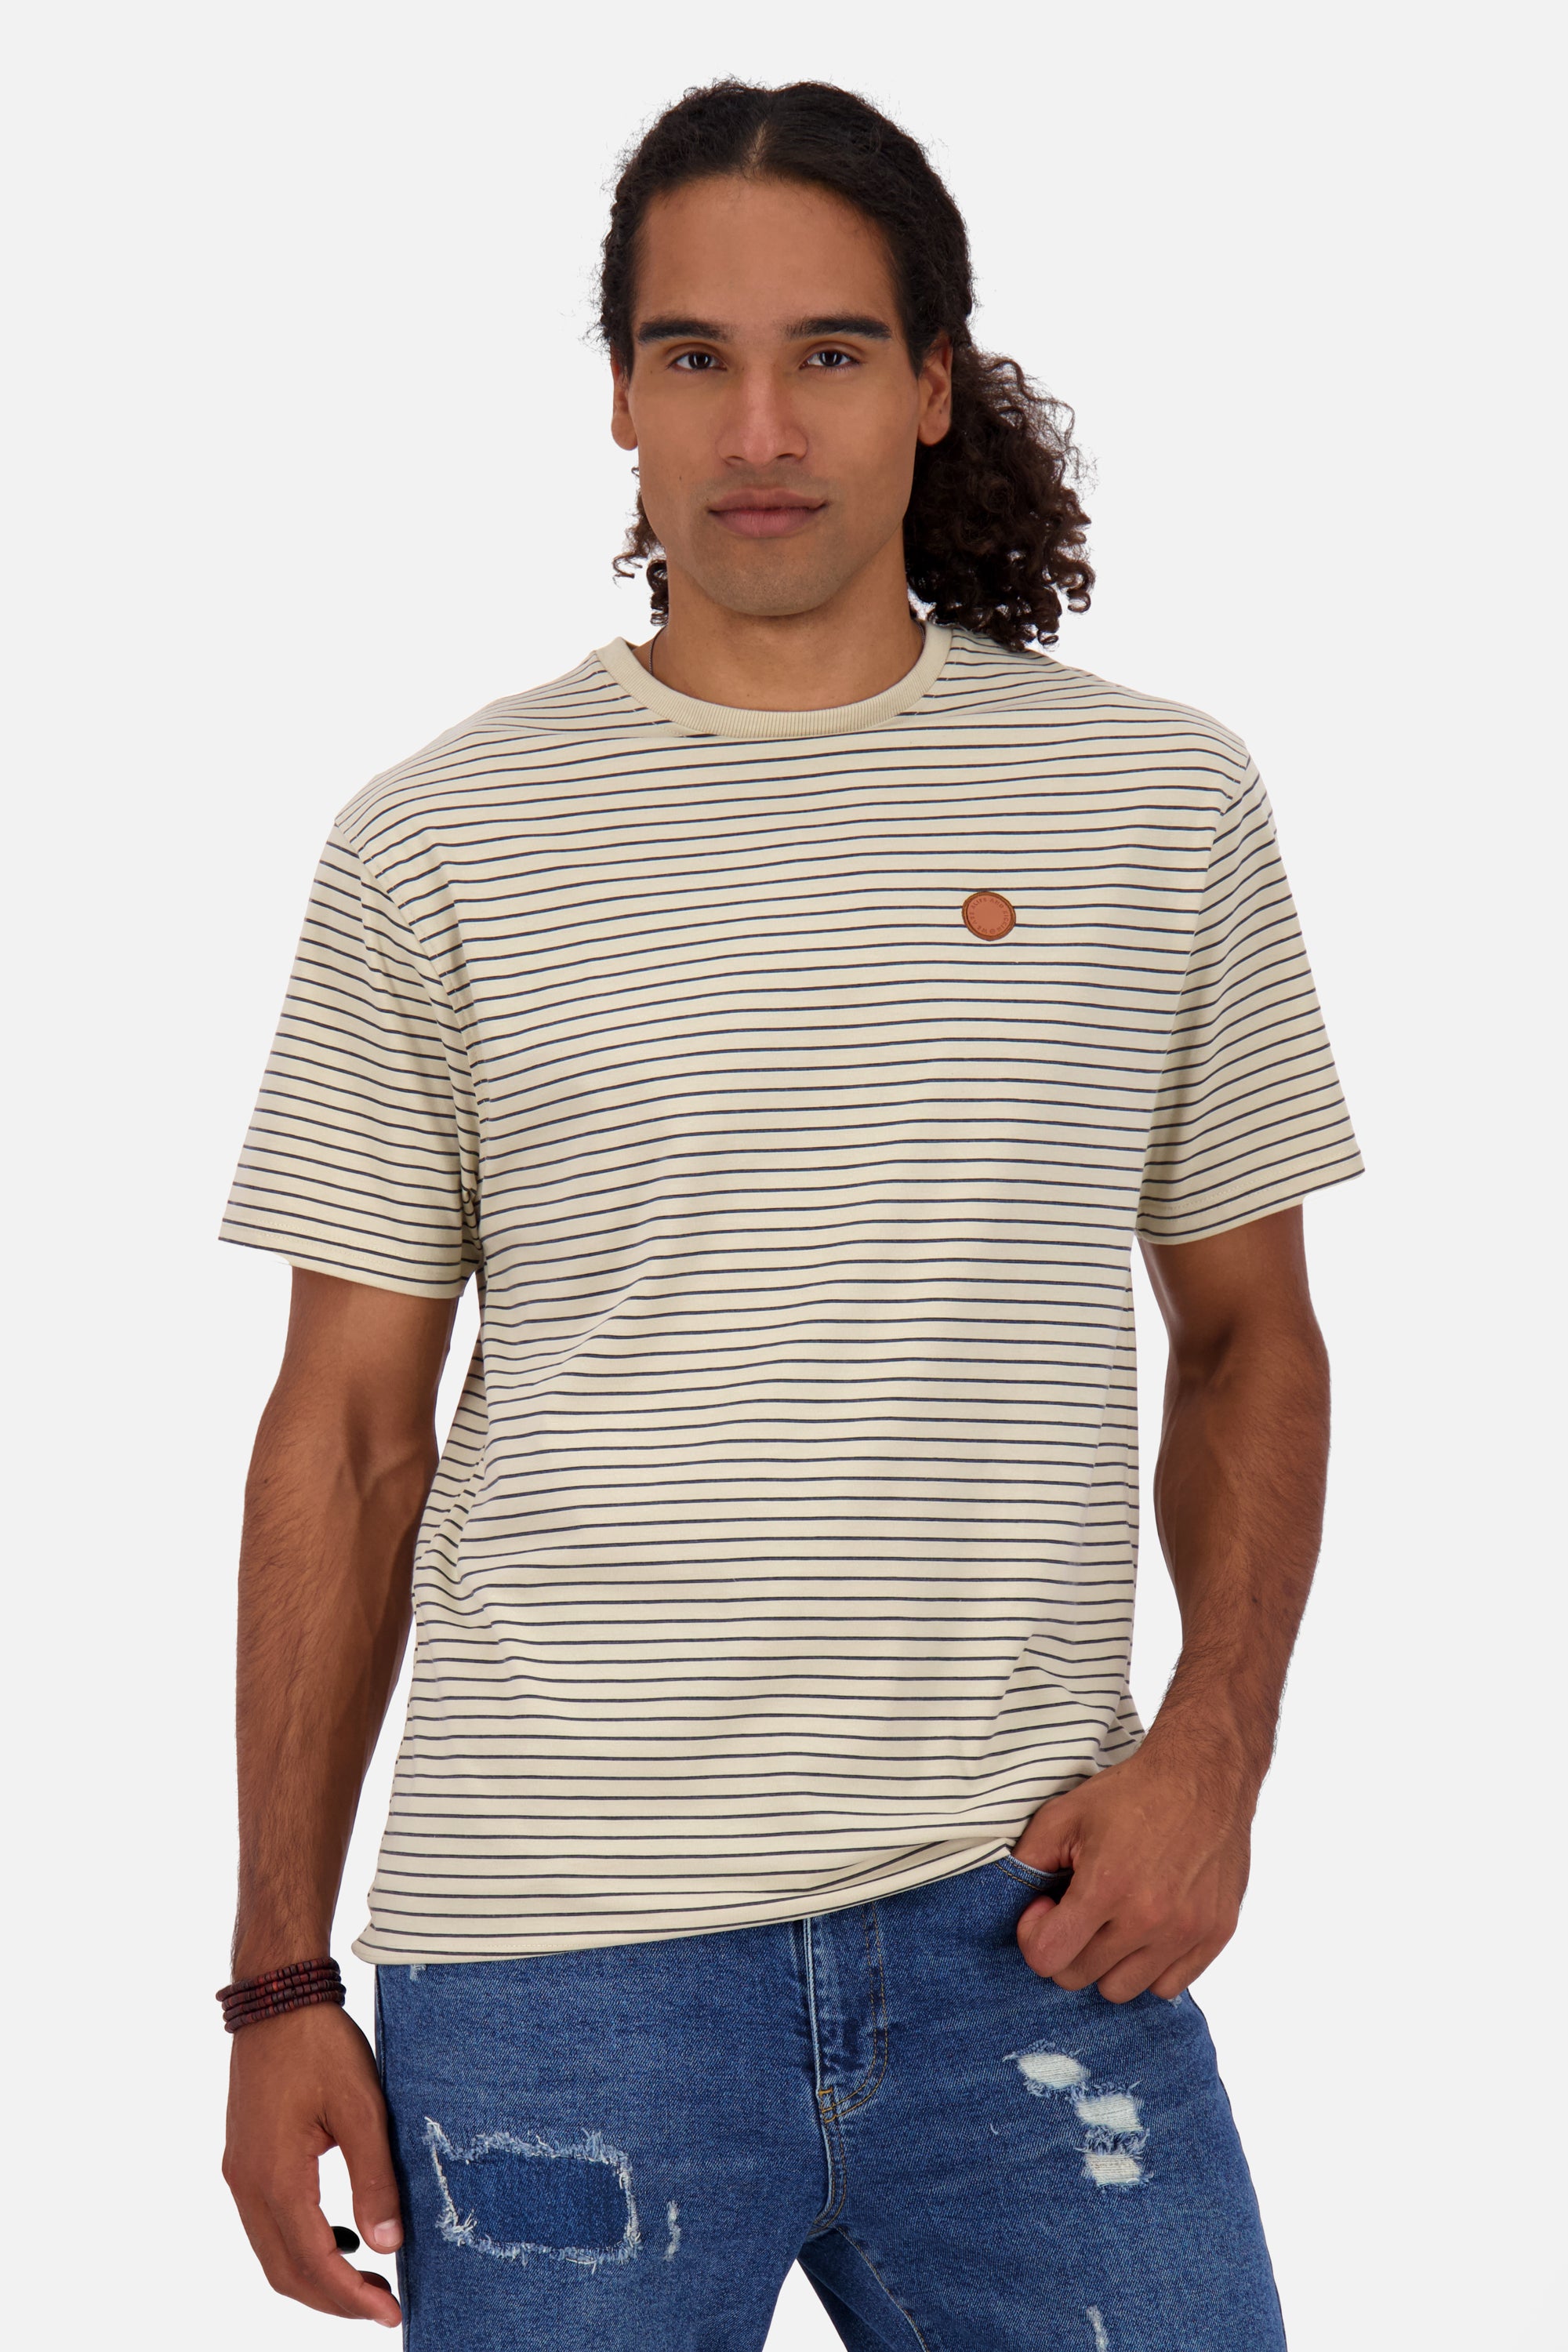 T-Shirt Herren NicAK Z mit Streifenmuster Beige